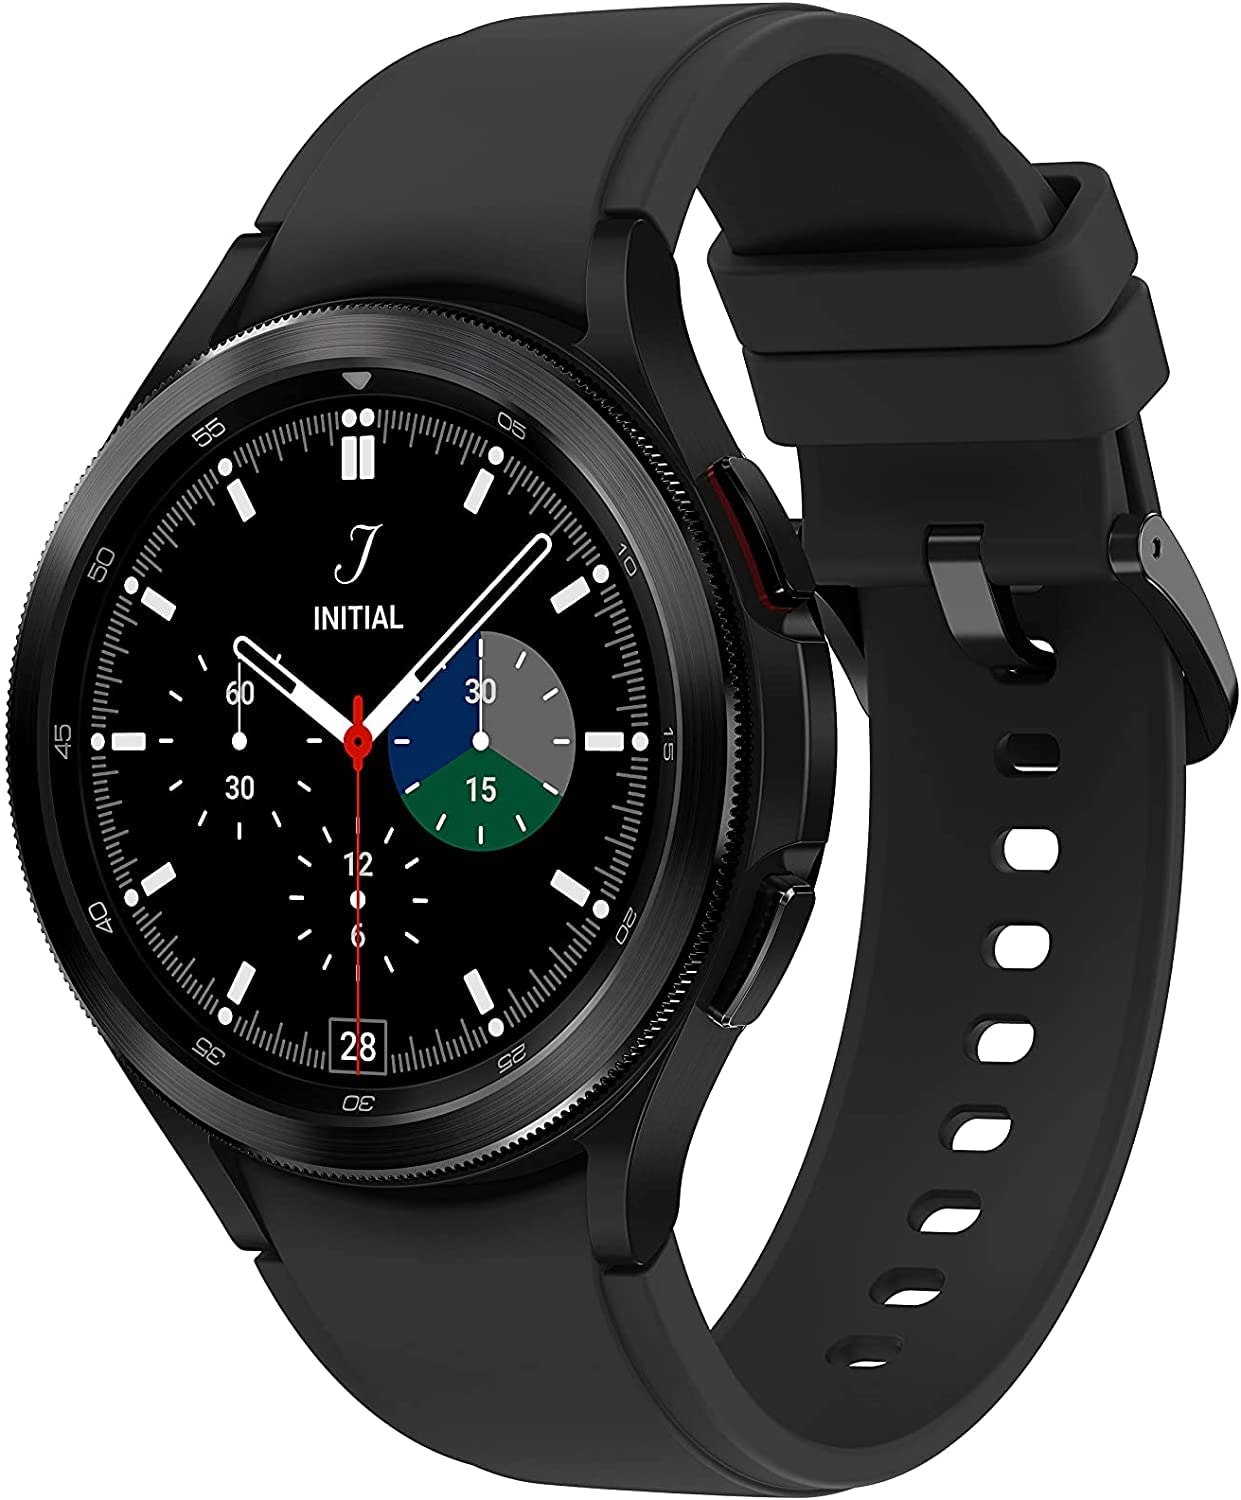 Tinh hoa của Samsung Galaxy Watch 4 Classic chính là sự kết hợp hoàn hảo giữa kiểu dáng sang trọng và tính năng đột phá. Điều đó khiến cho chiếc đồng hồ này trở thành lựa chọn hoàn hảo cho những ai yêu thích đồ công nghệ.